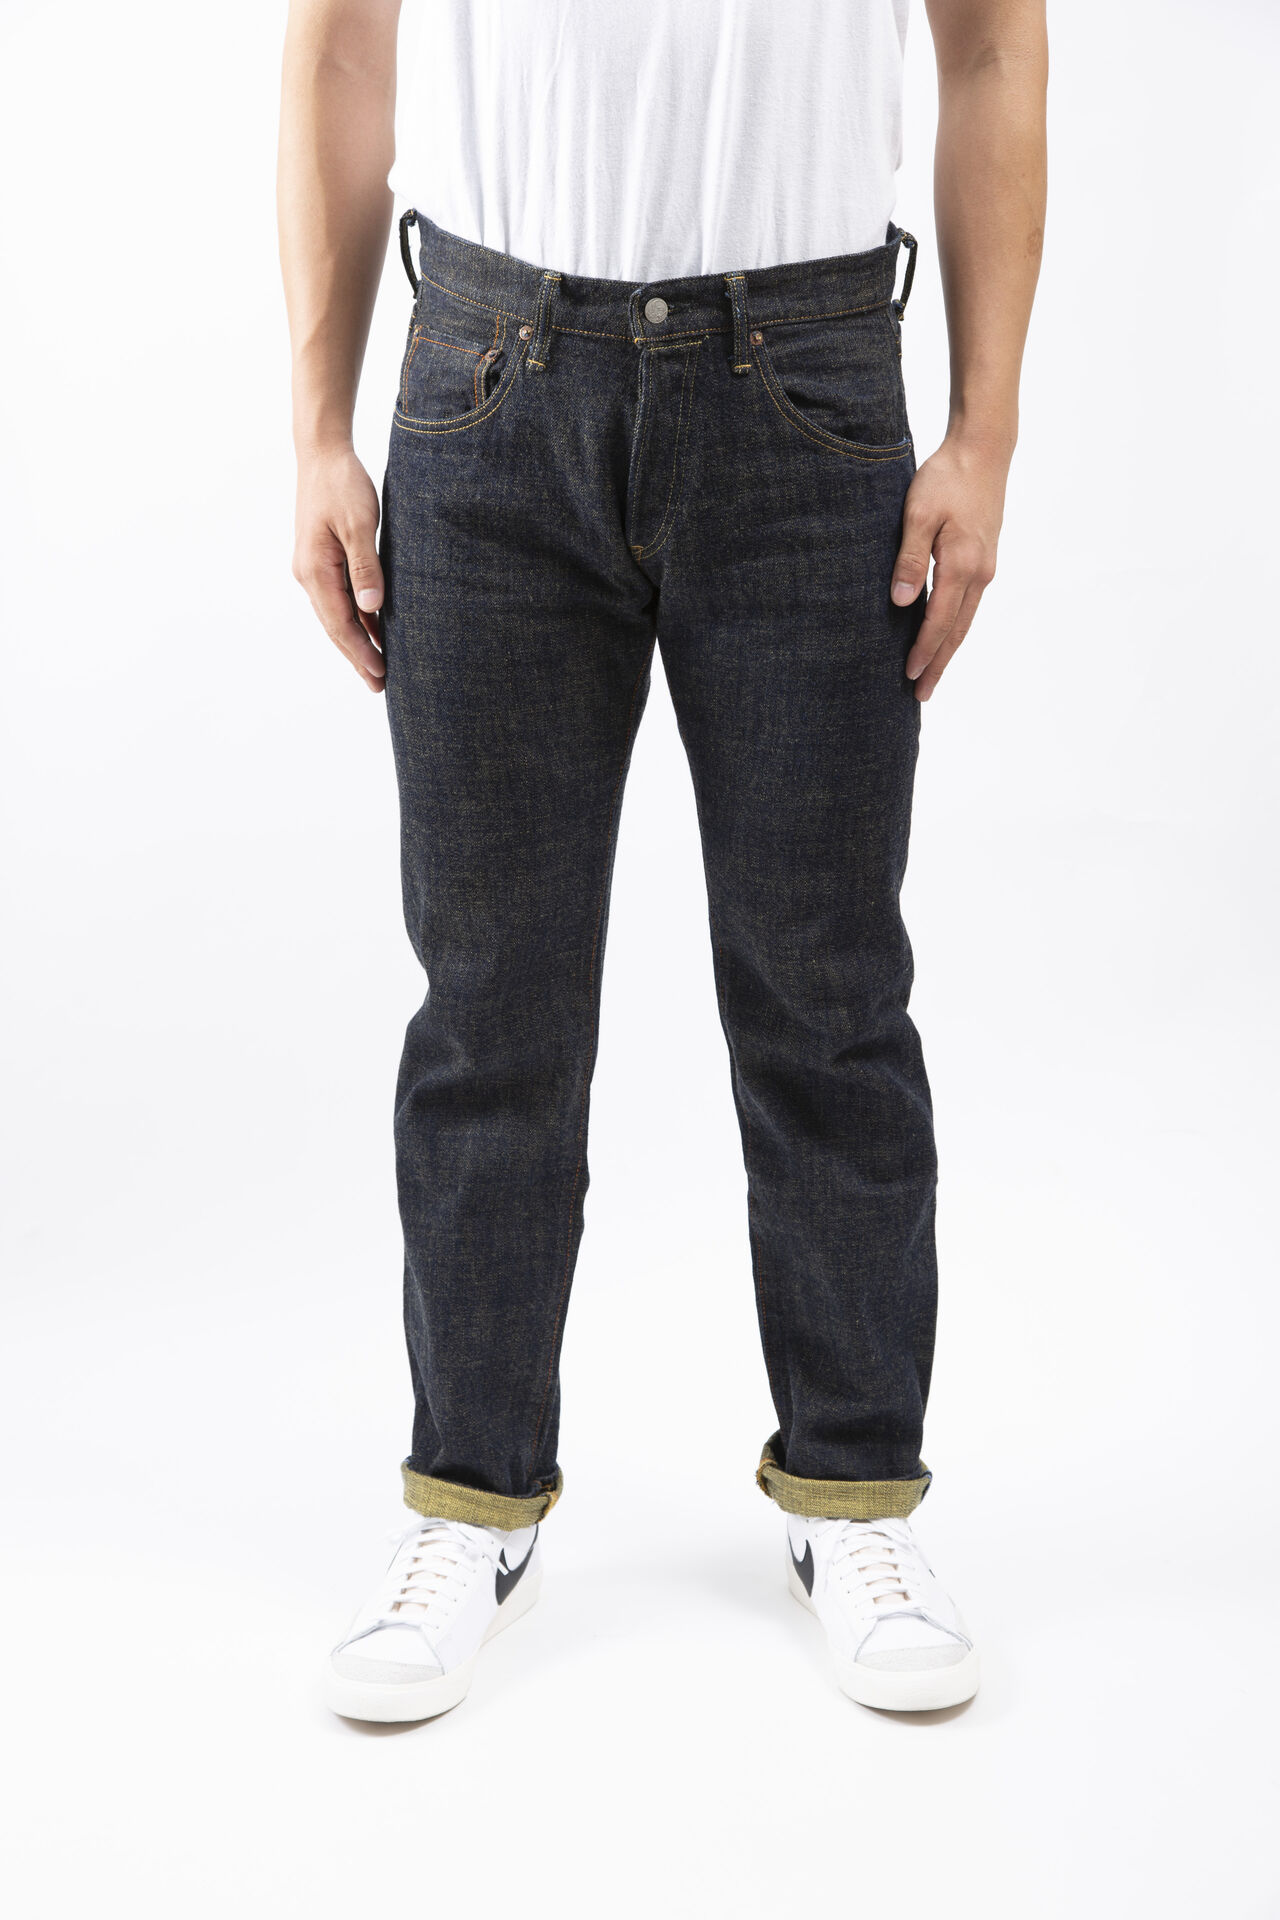 Slim Straight SOGA 15oz Jeans,, large image number 0